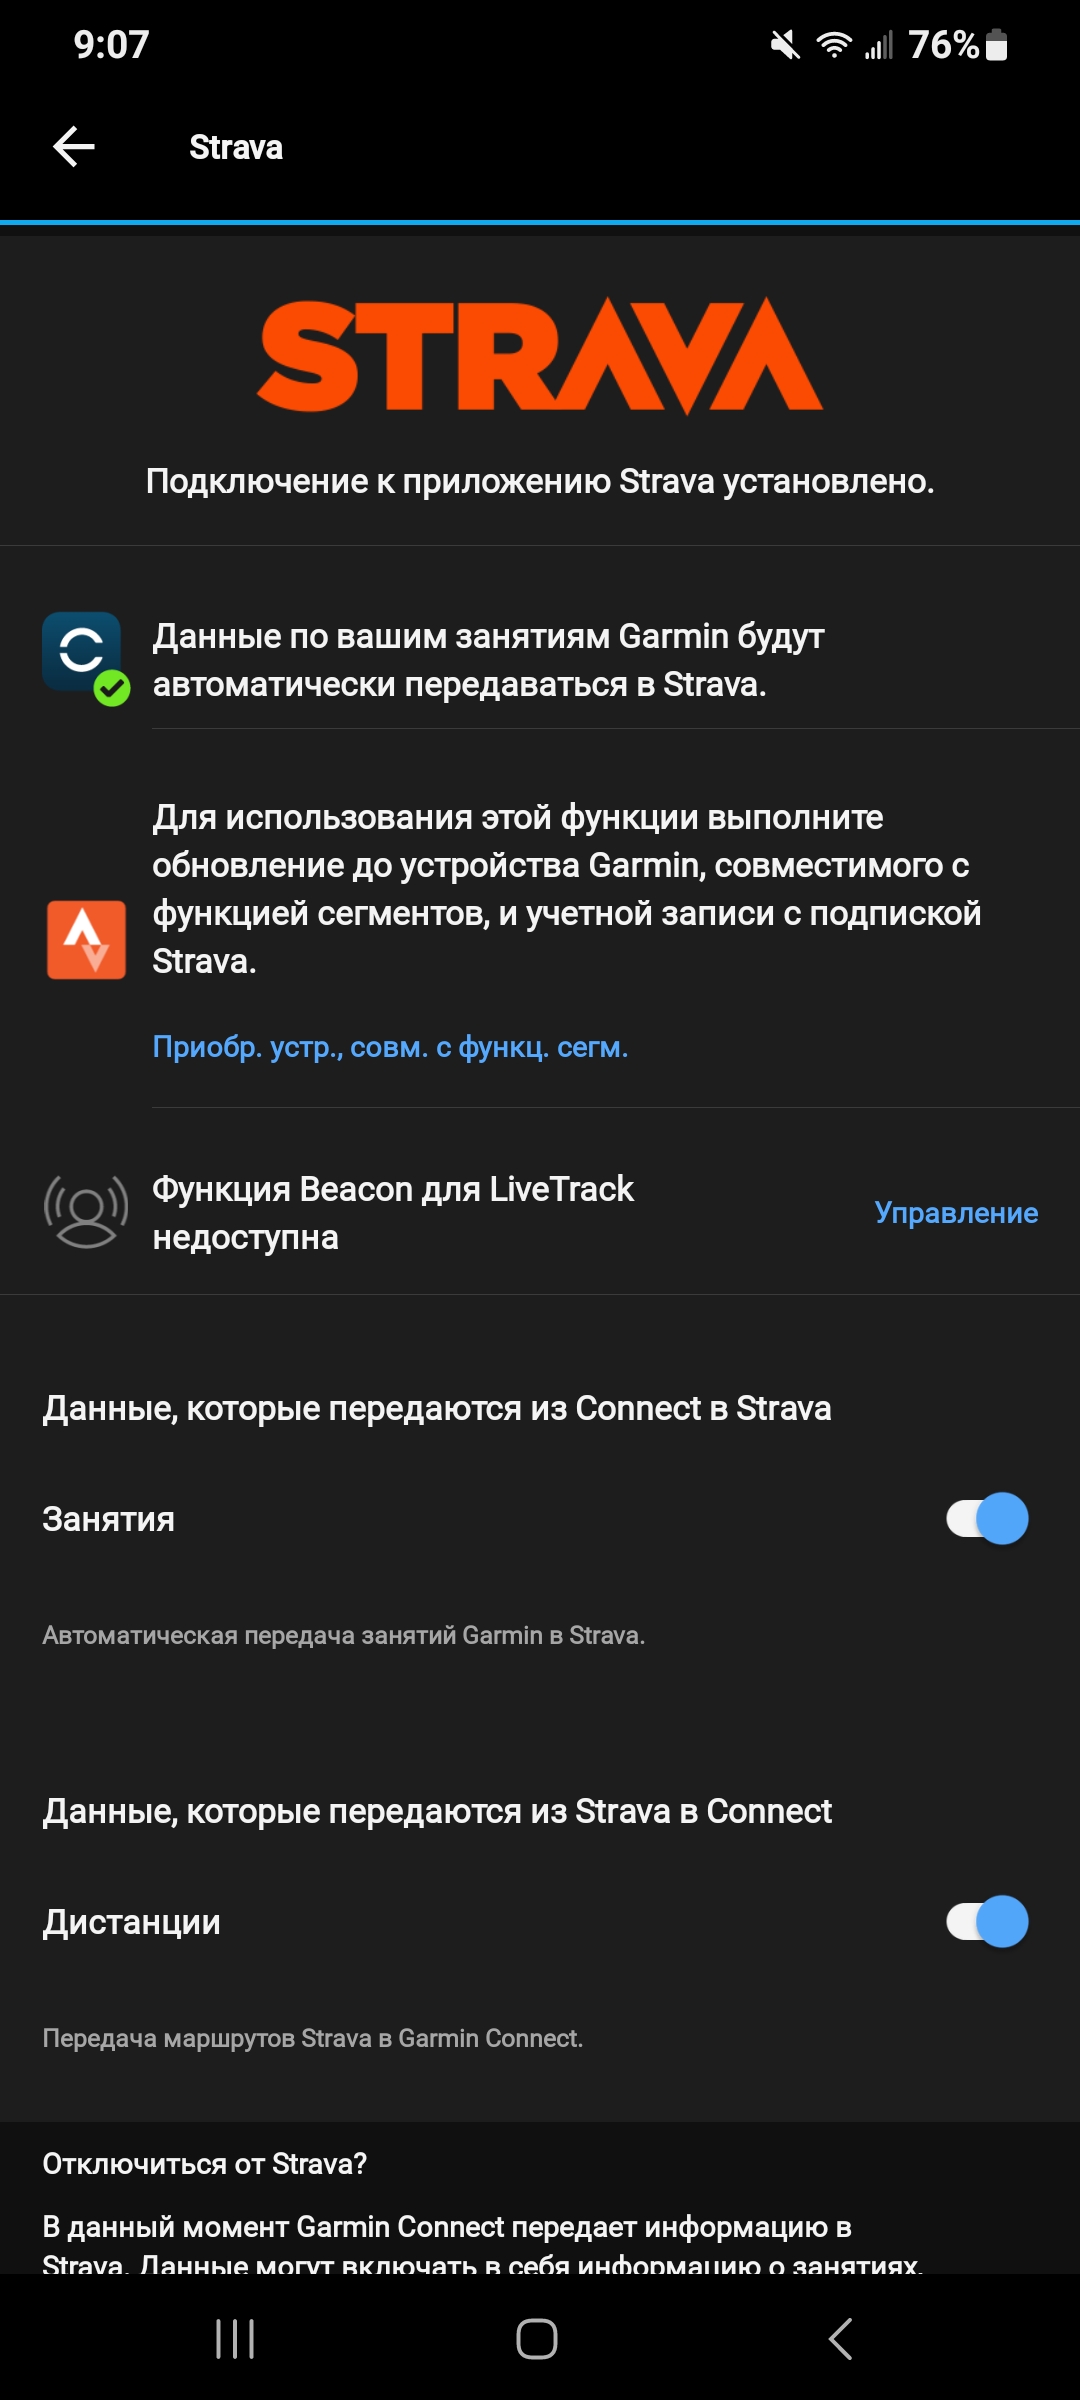 Russian_Garmin_connect2.jpg